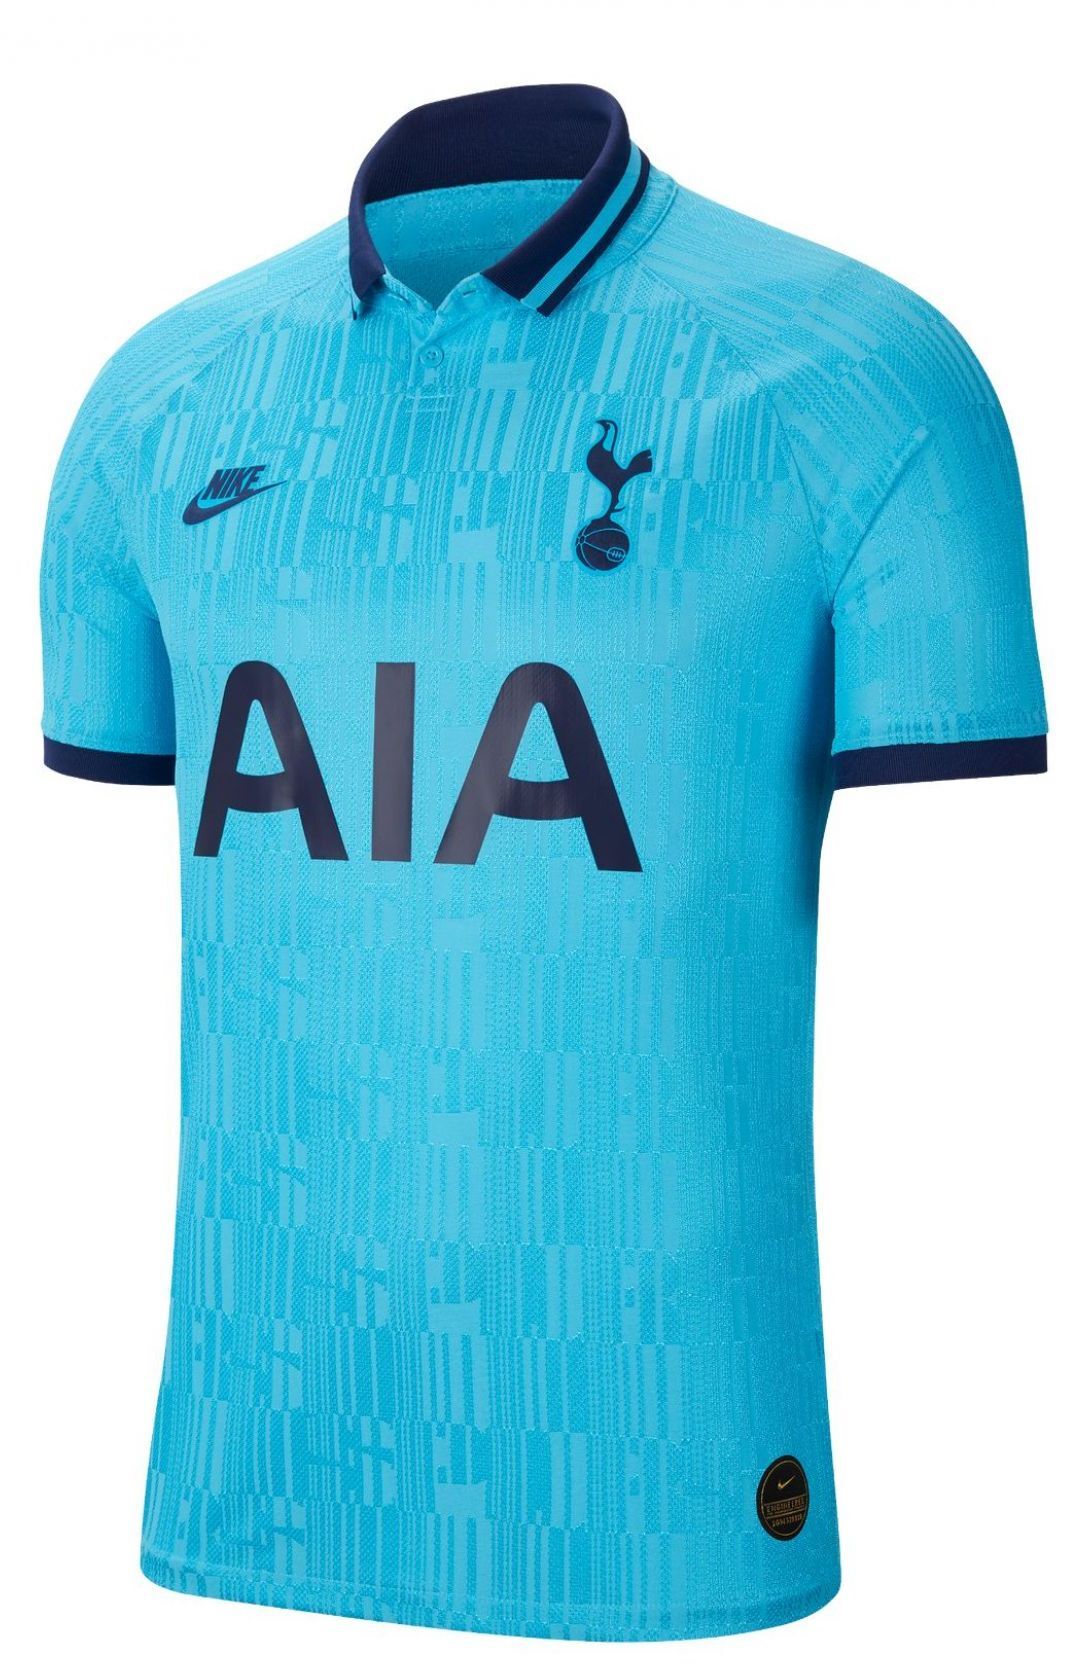 Tottenham Hotspur F.C. derde shirt seizoen 2019/2020